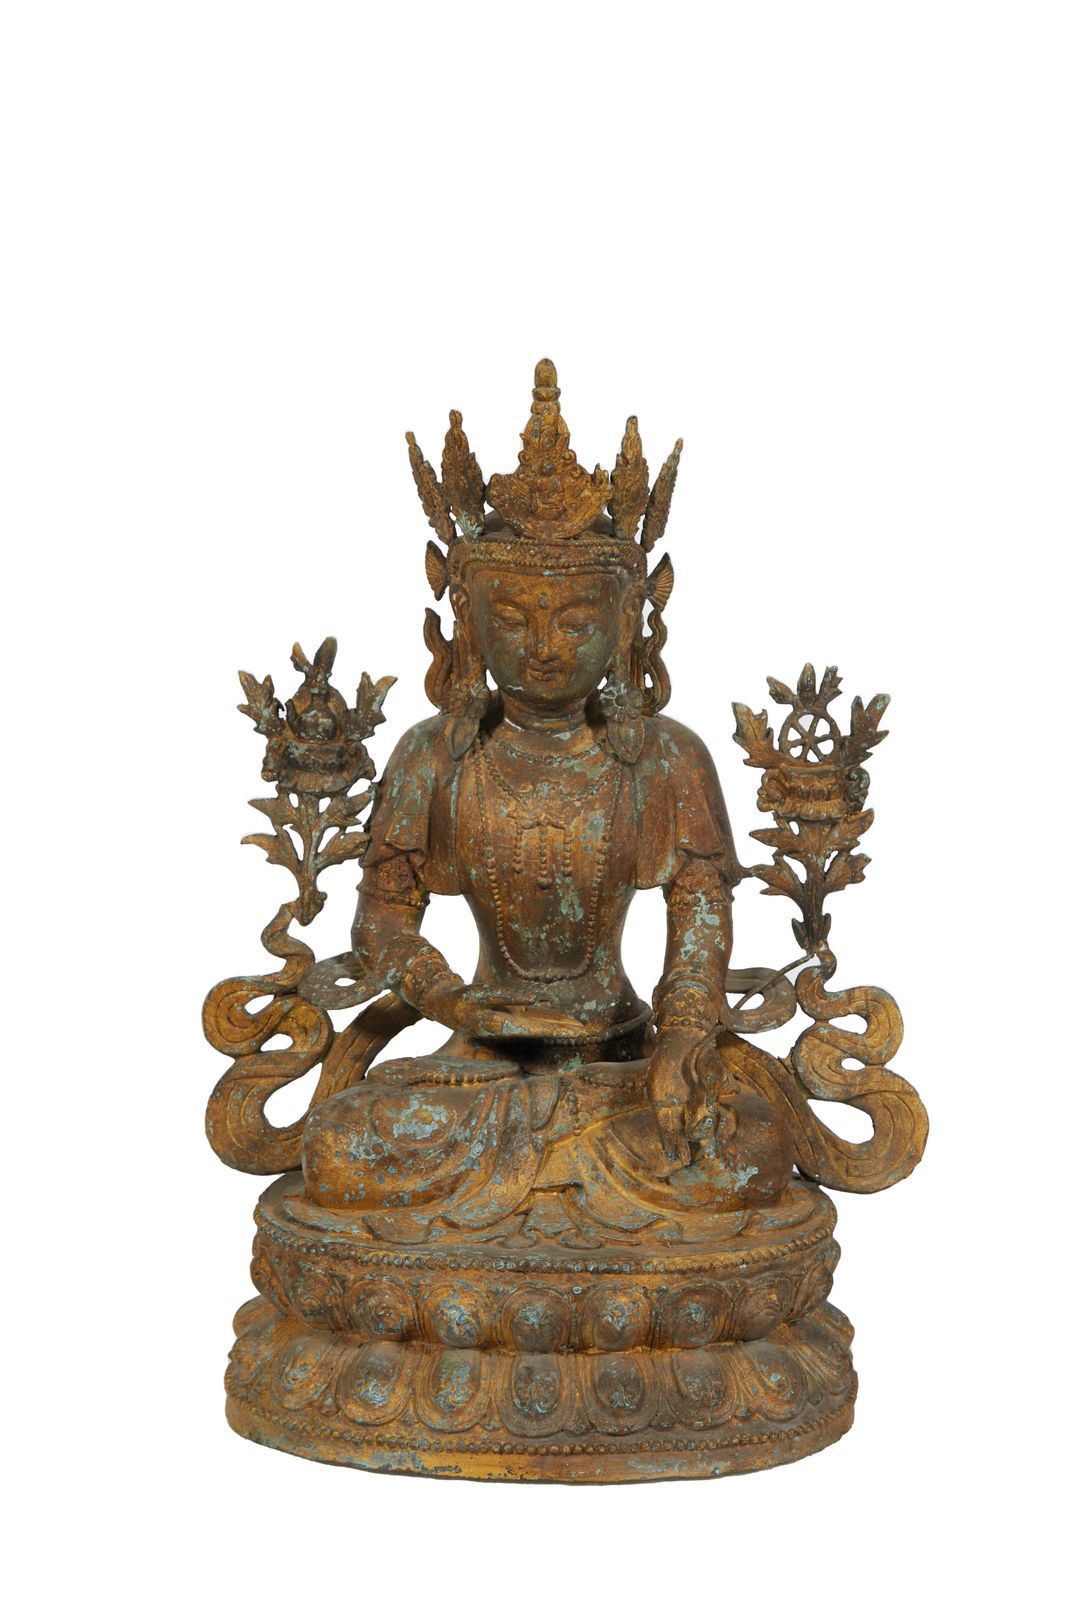 Null 58 Guanyin en bronce cincelado y dorado
72 x 52 cm